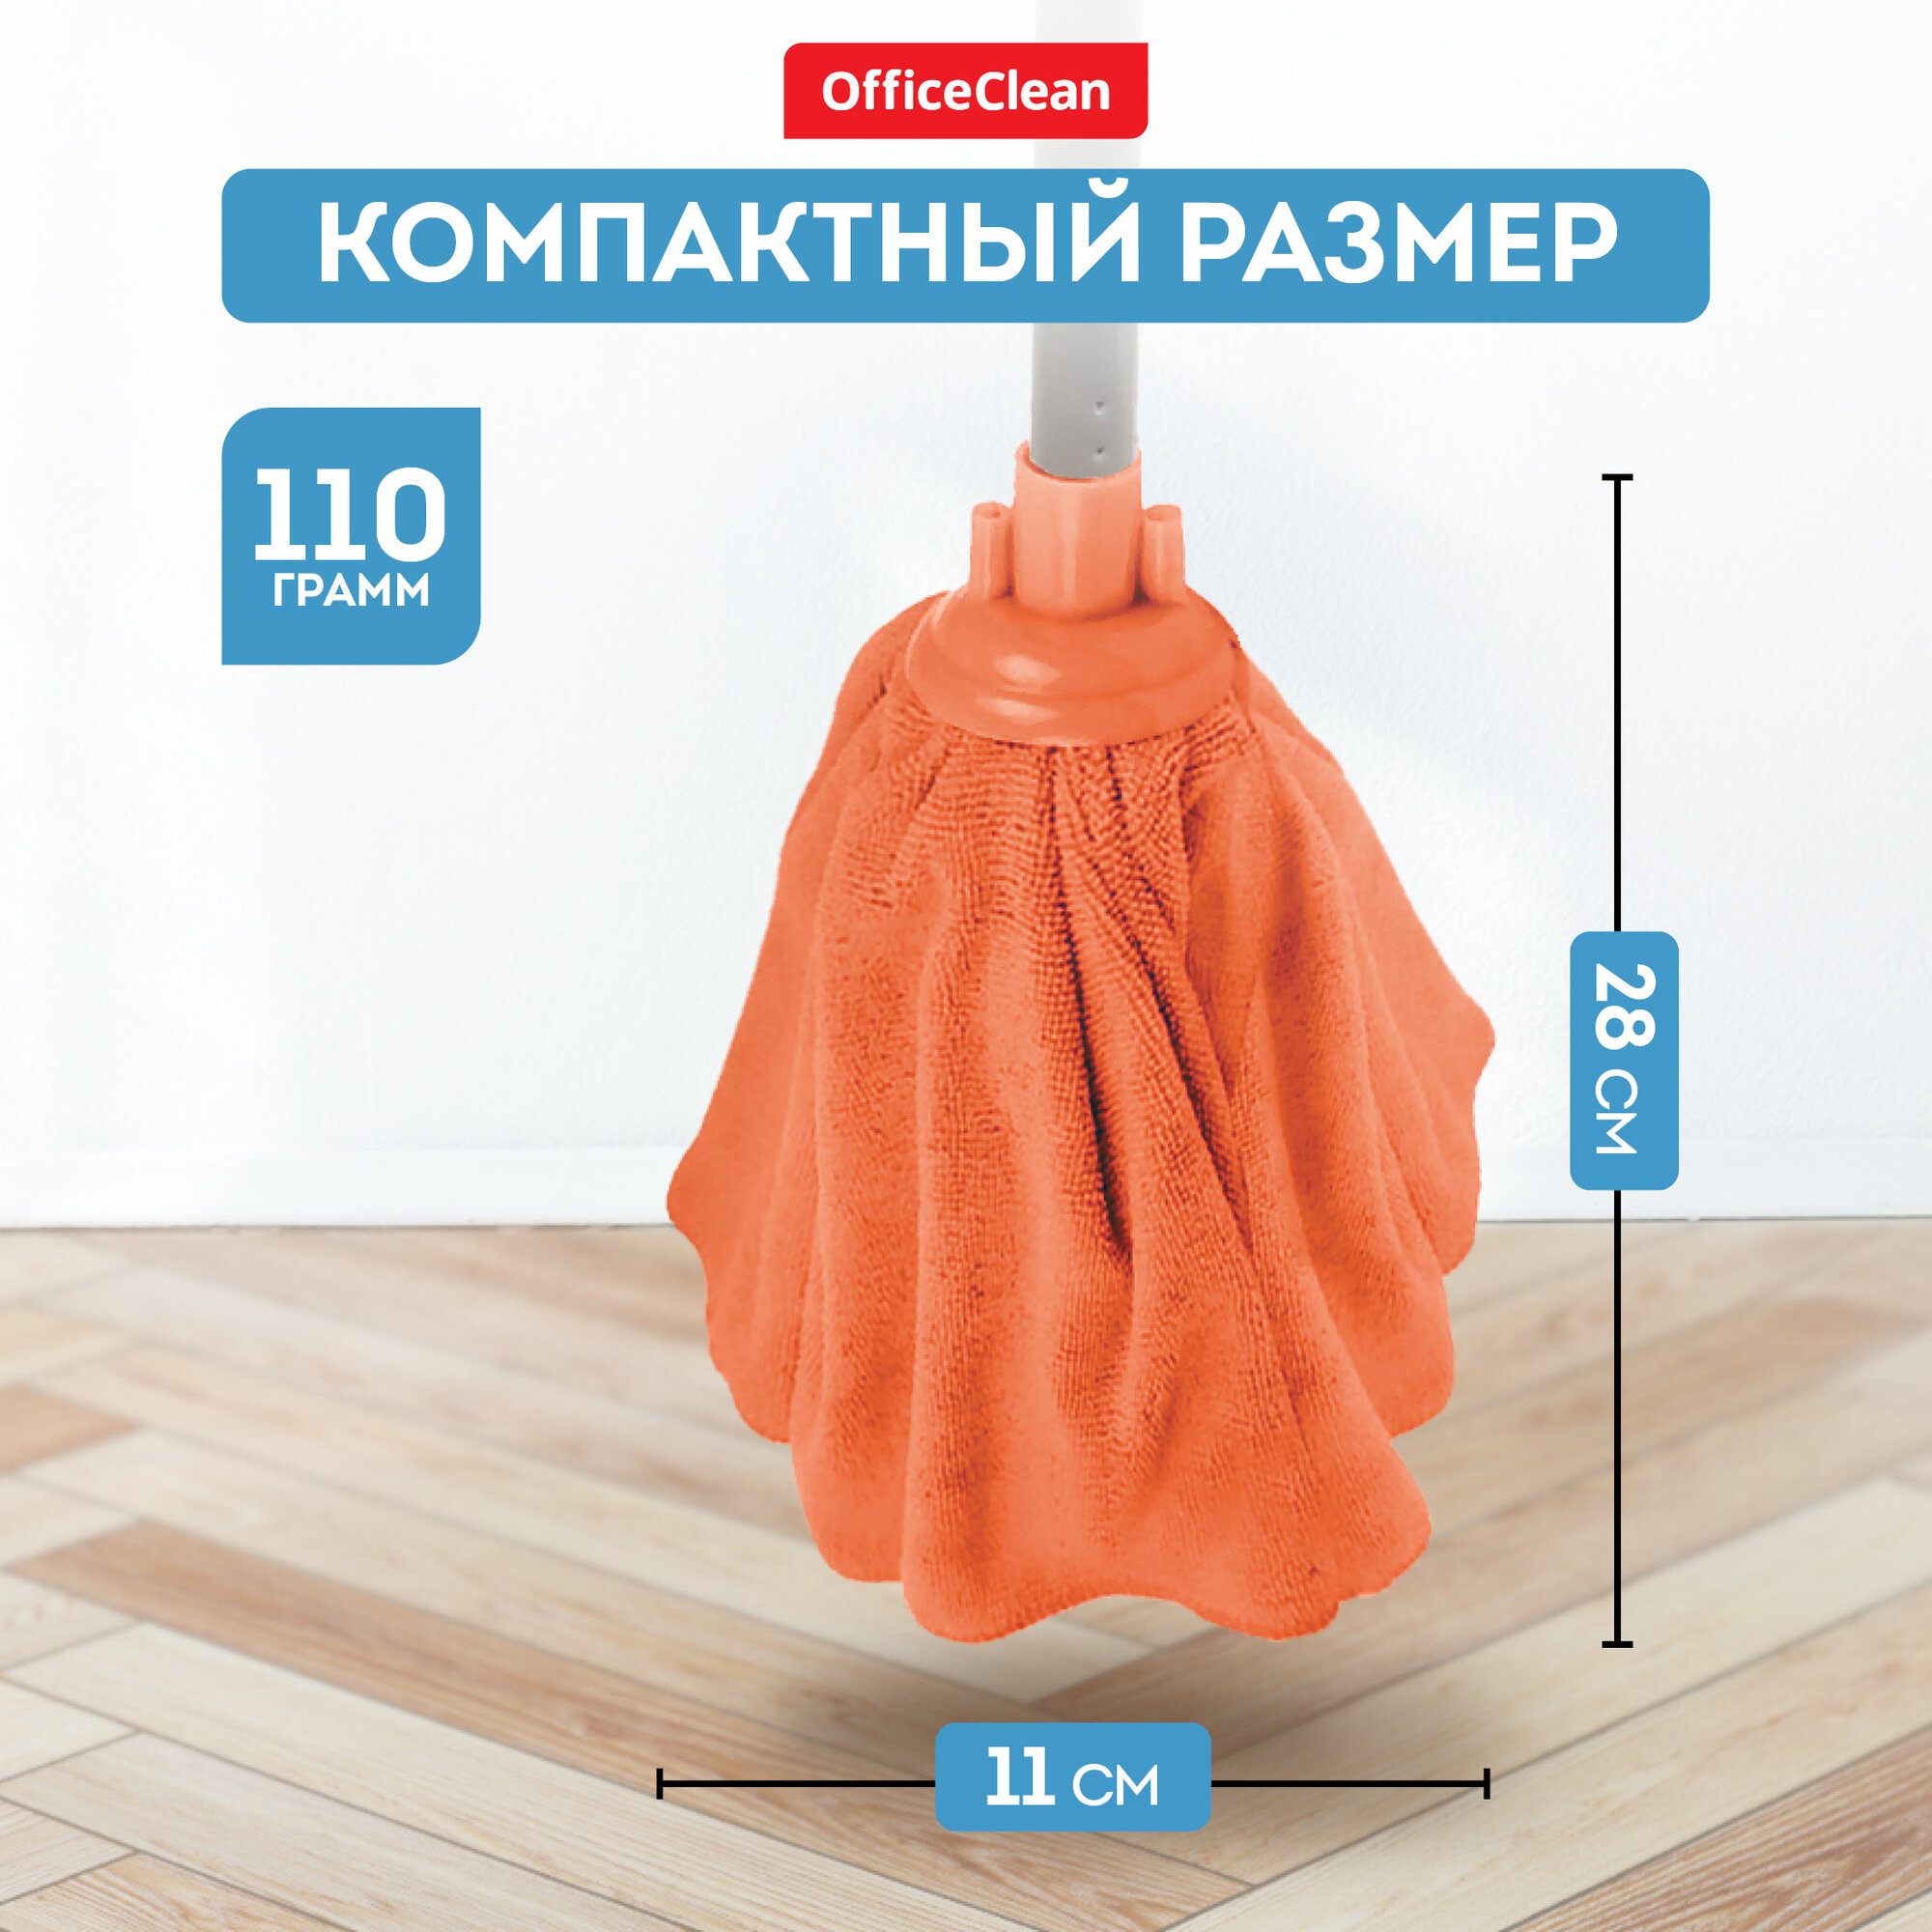 Насадка для швабры юбка сменная 28 см / тряпка МОП OfficeClean Professional из микрофибры для уборки пола